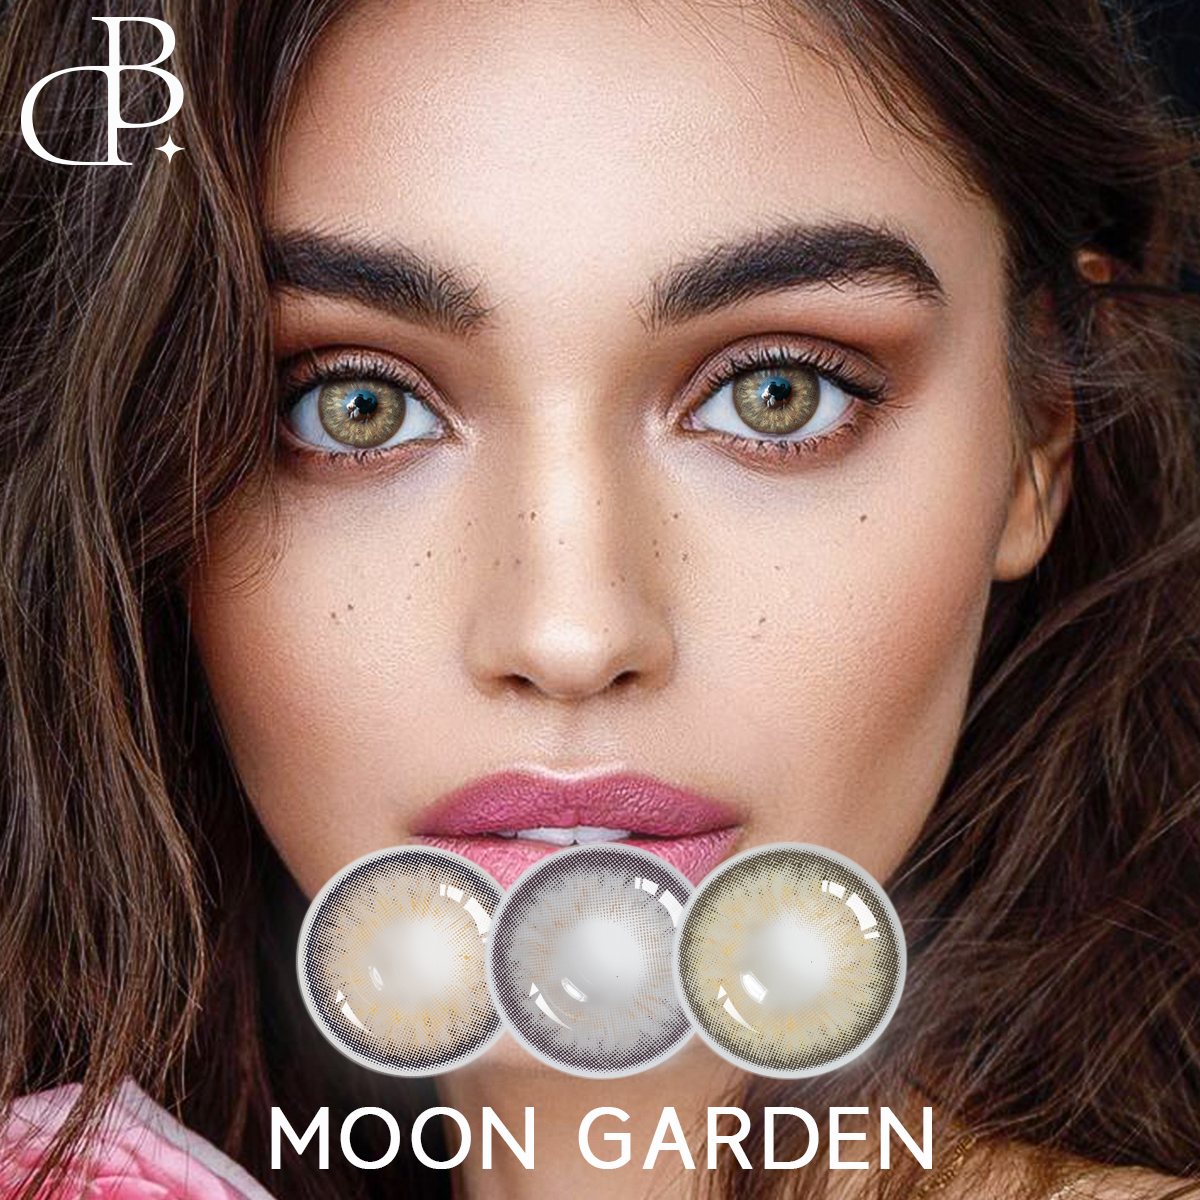 မျက်ကပ်မှန်အသစ် MOON GARDEN Color Day Contact Lens လက်ကား သဘာဝအရောင်များ မျက်လုံးမျက်ကပ်မှန်